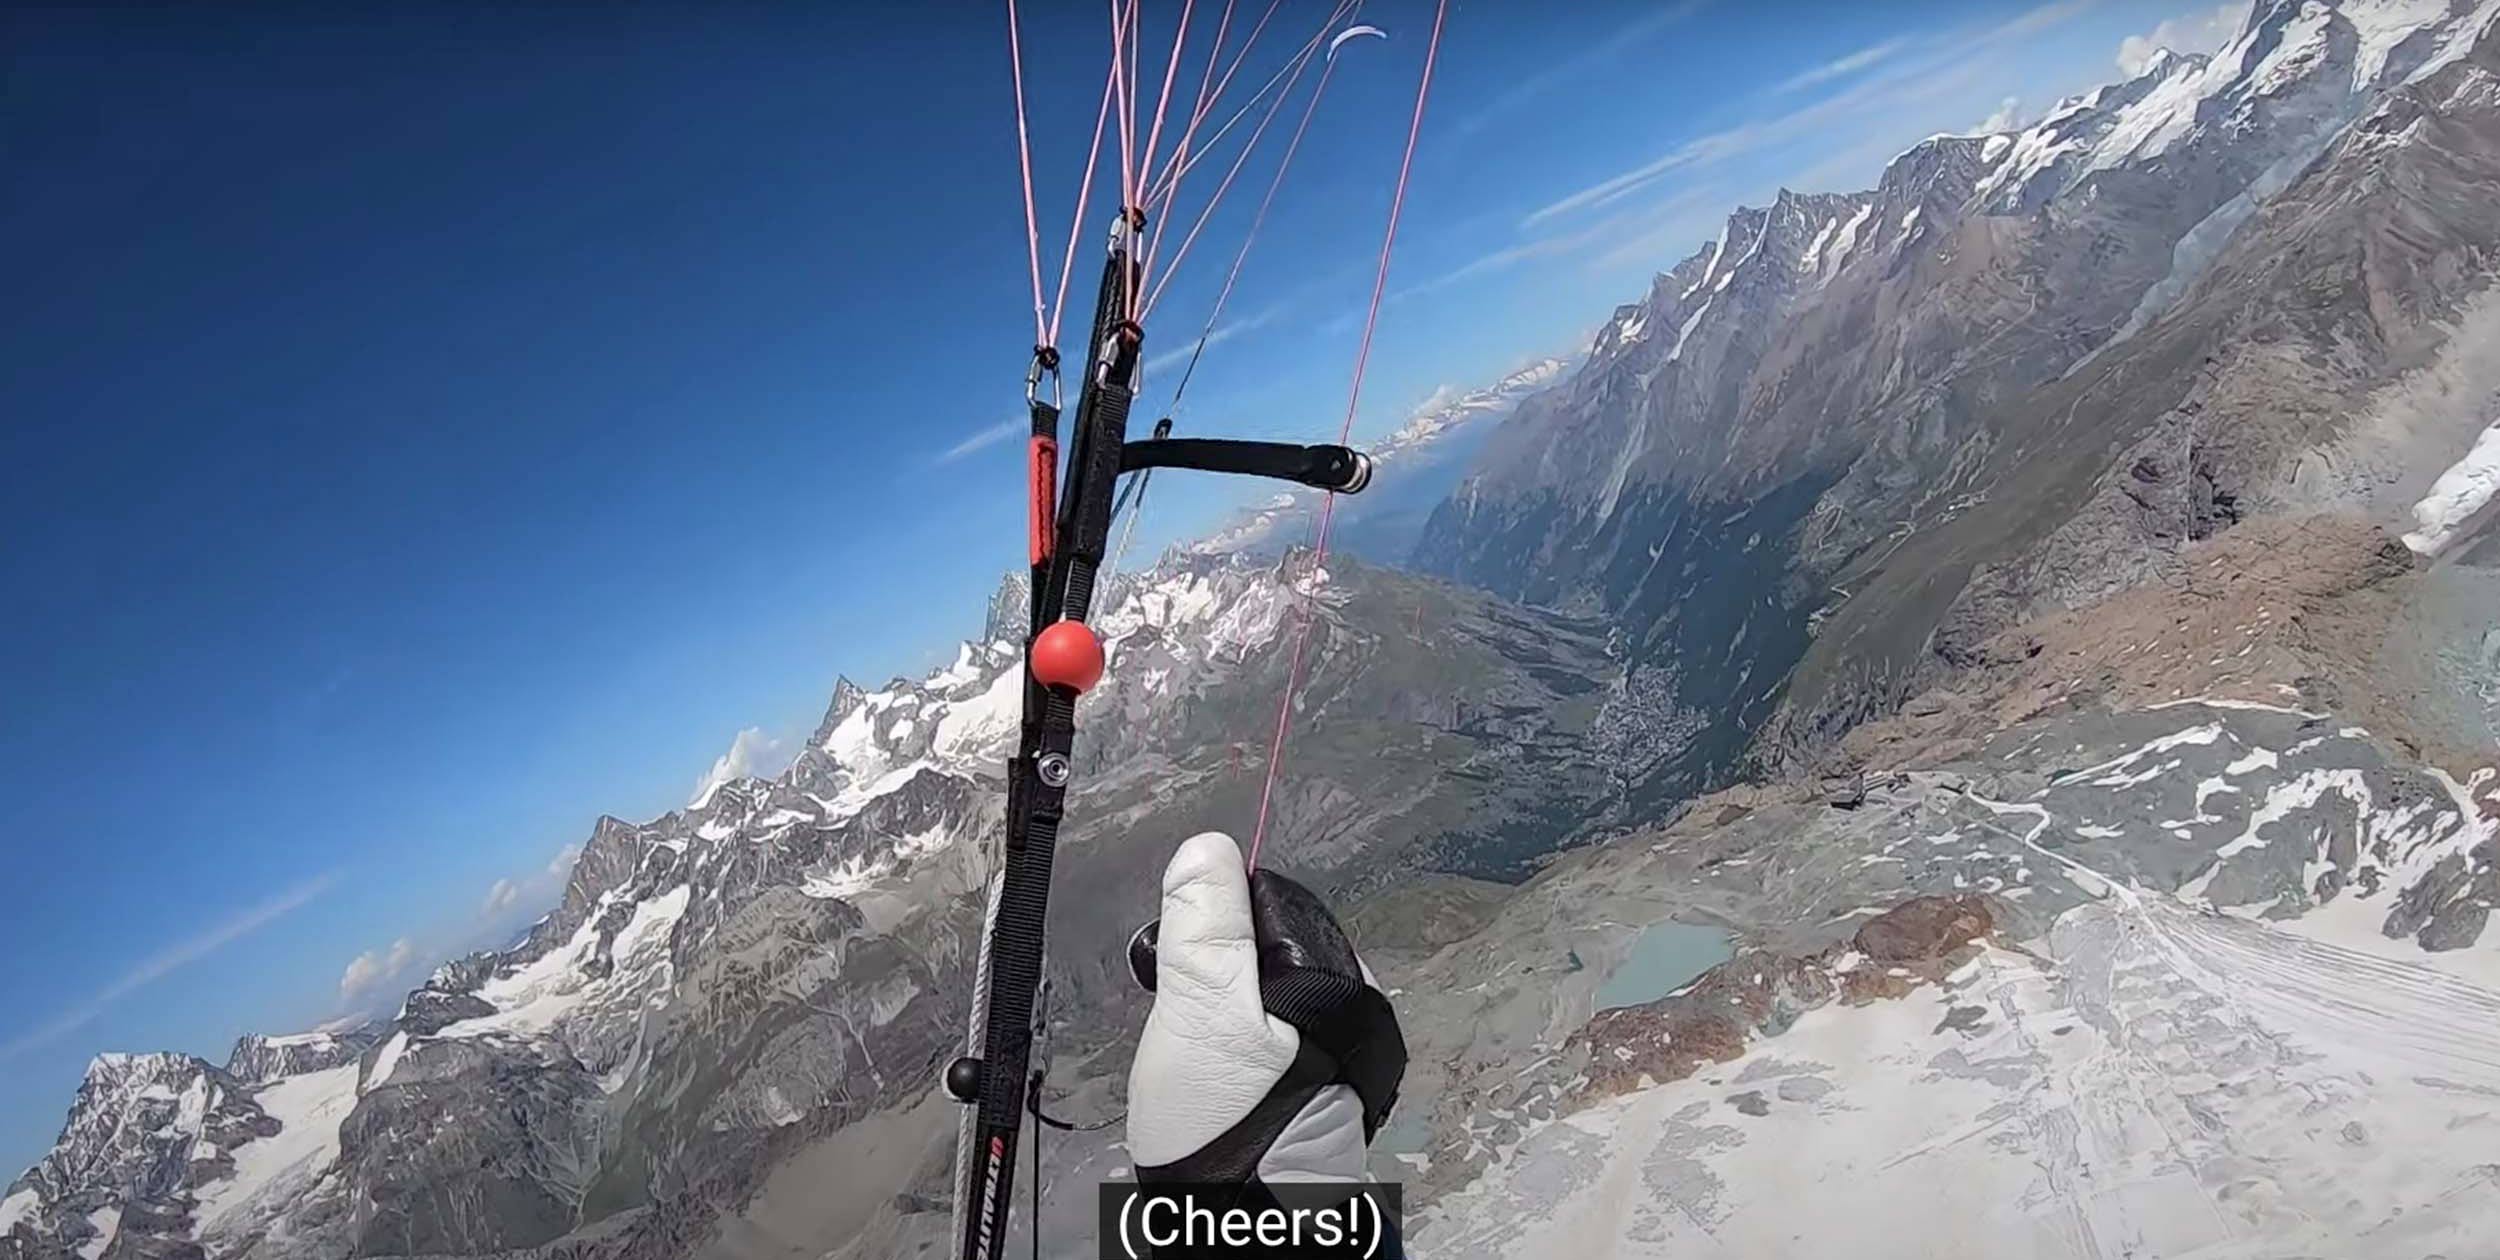 vol bivouac flight in the Alps